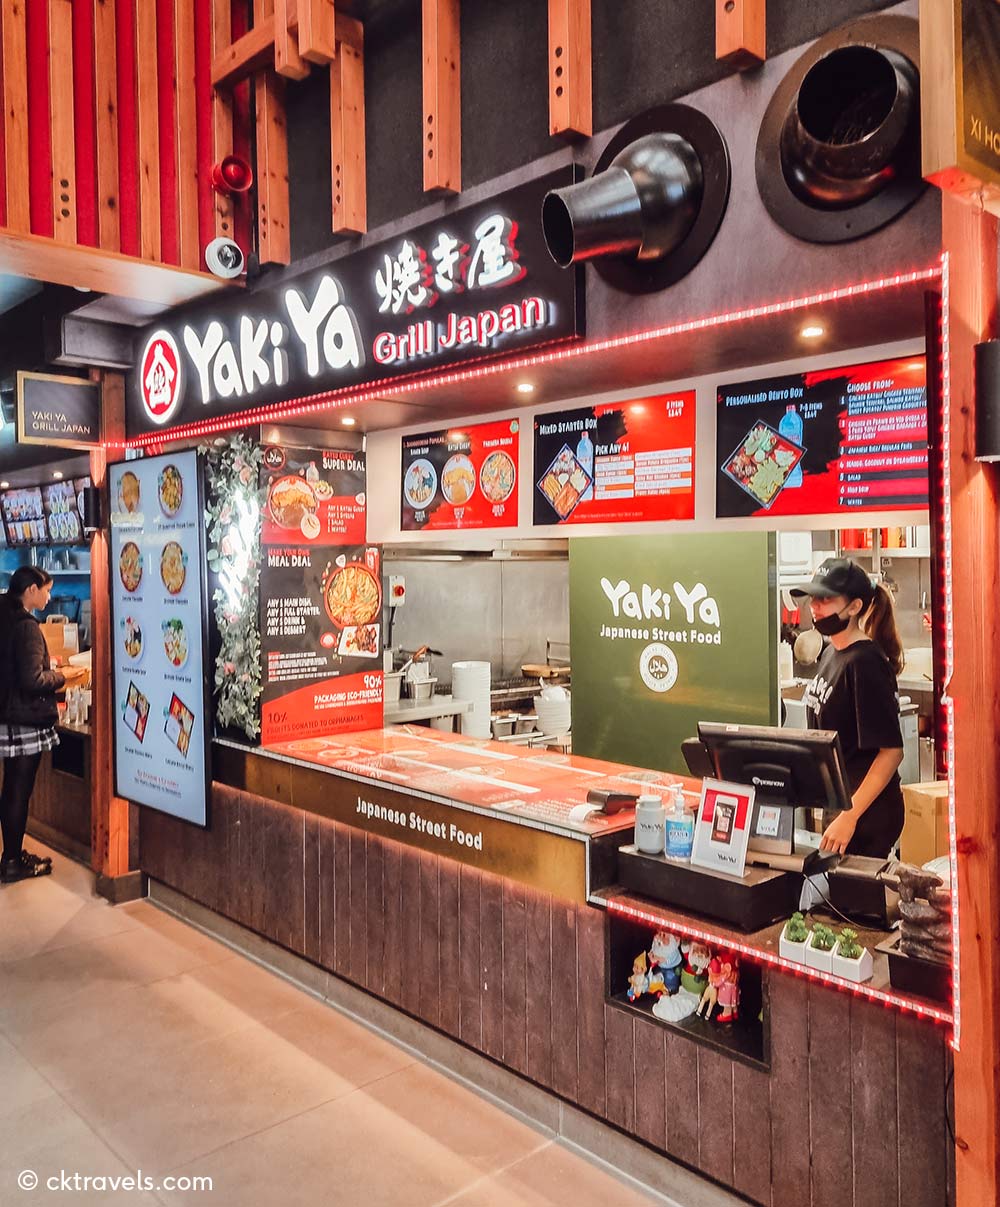 Yaki Ya Grill Japan at Bang Bang Oriental food hall, Colindale